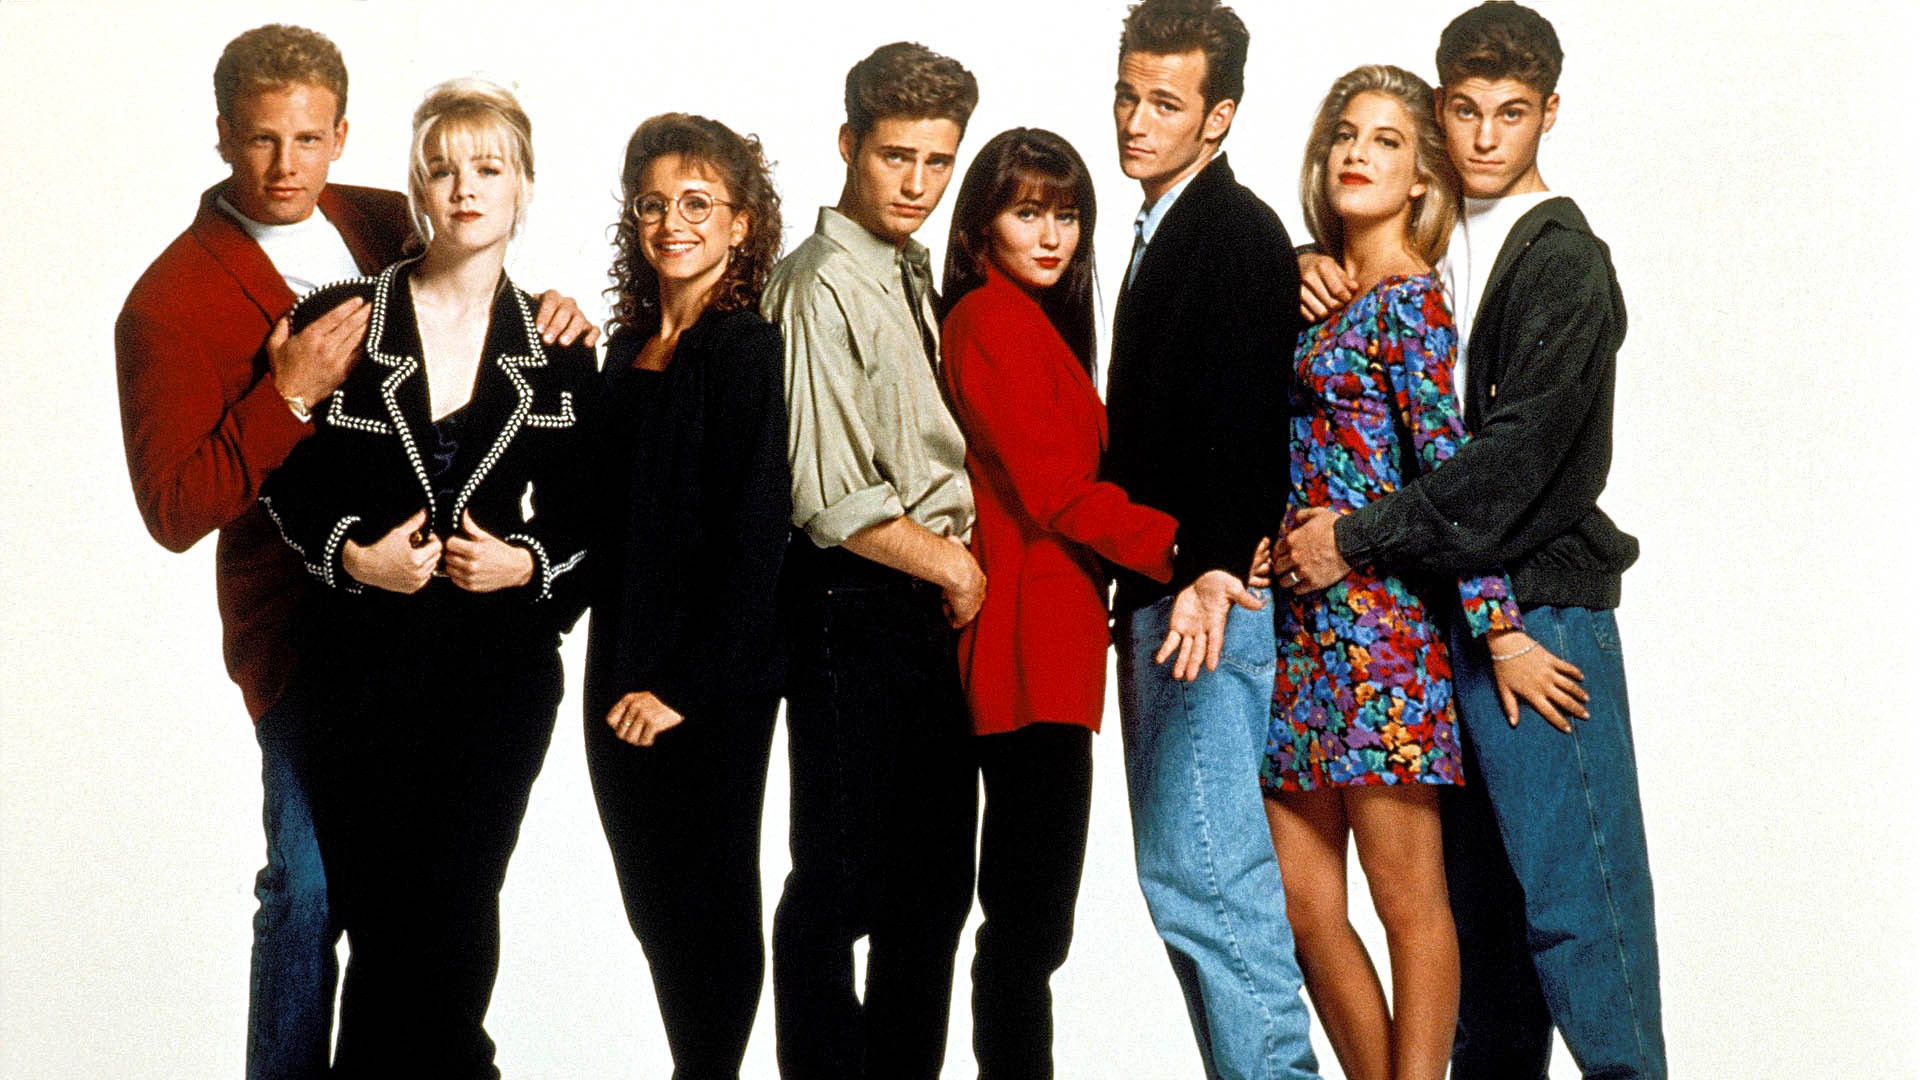 Беверли-Хиллз 90210 – 4 сезон 9 серия «Другими словами, я замужем» / Beverly Hills, 90210